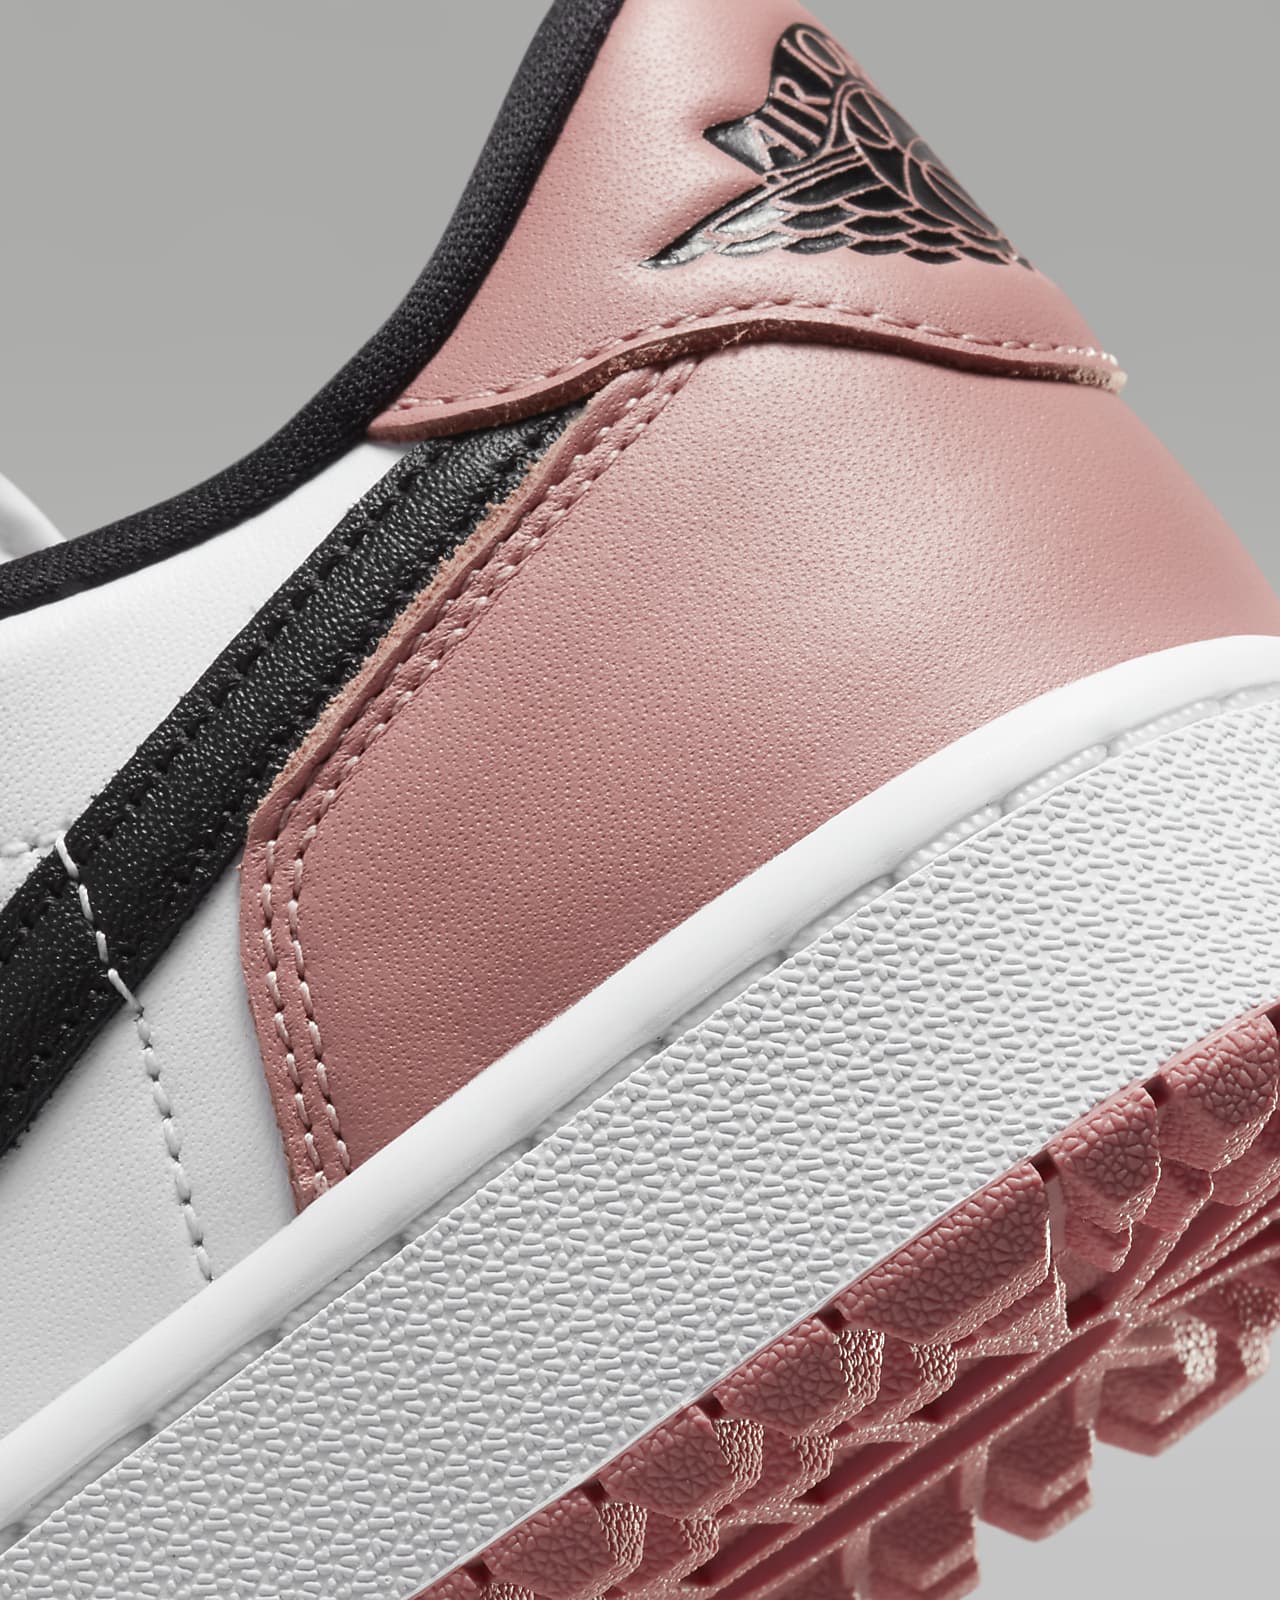 Nike releases spikeless Jordan golf shoes  Golf Equipment Clubs Balls  Bags  Golf Digest